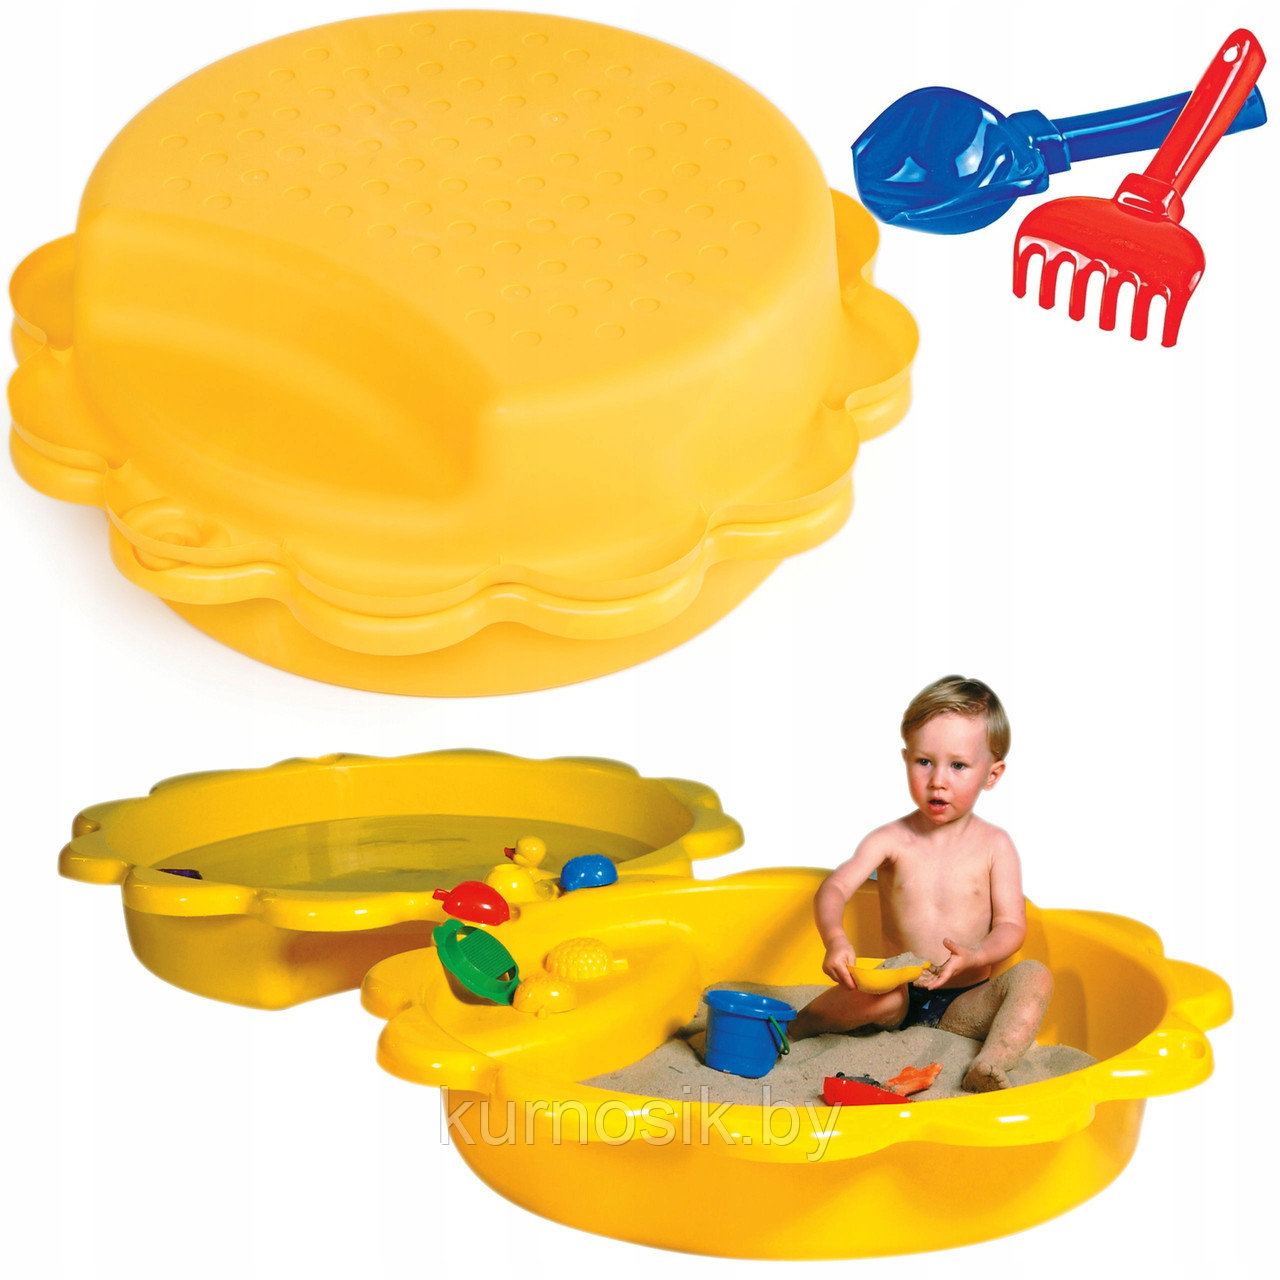 Детская песочница бассейн  с крышкой "Подсолнух" Paradiso Toys 114 x 26 см